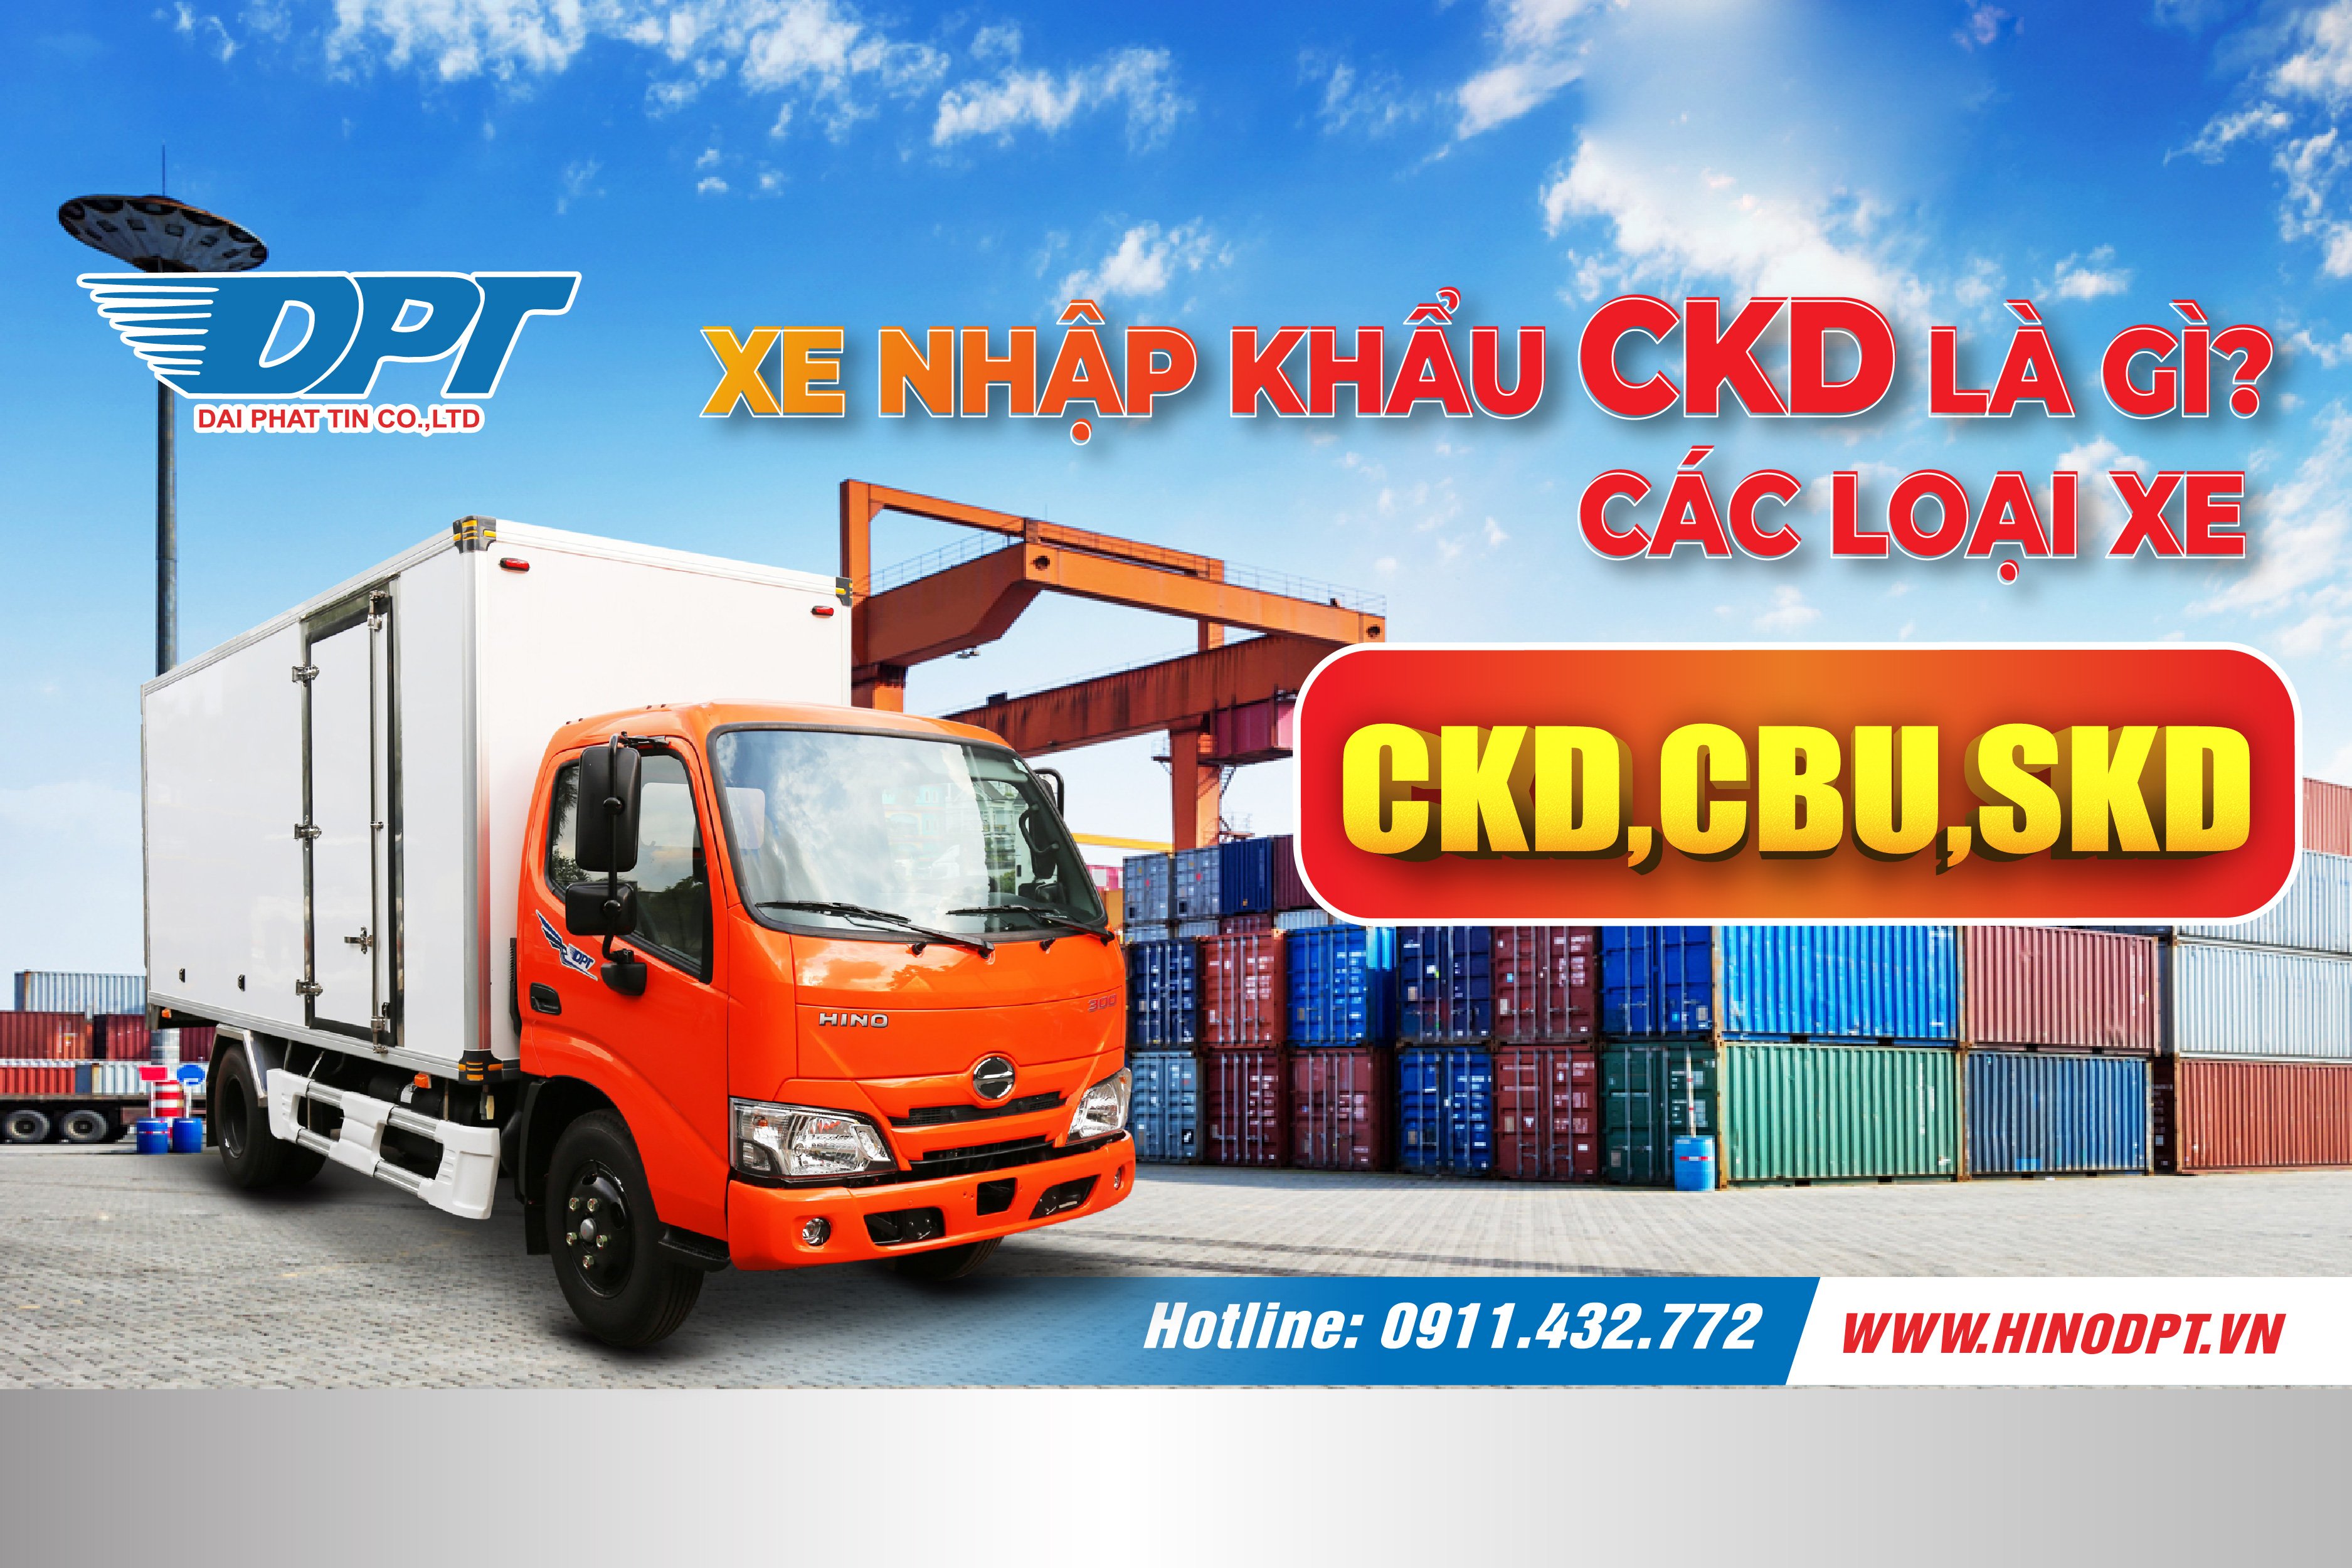 Xe nhập khẩu CKD là gì? Các loại xe CKD, CBU, SKD là gì?